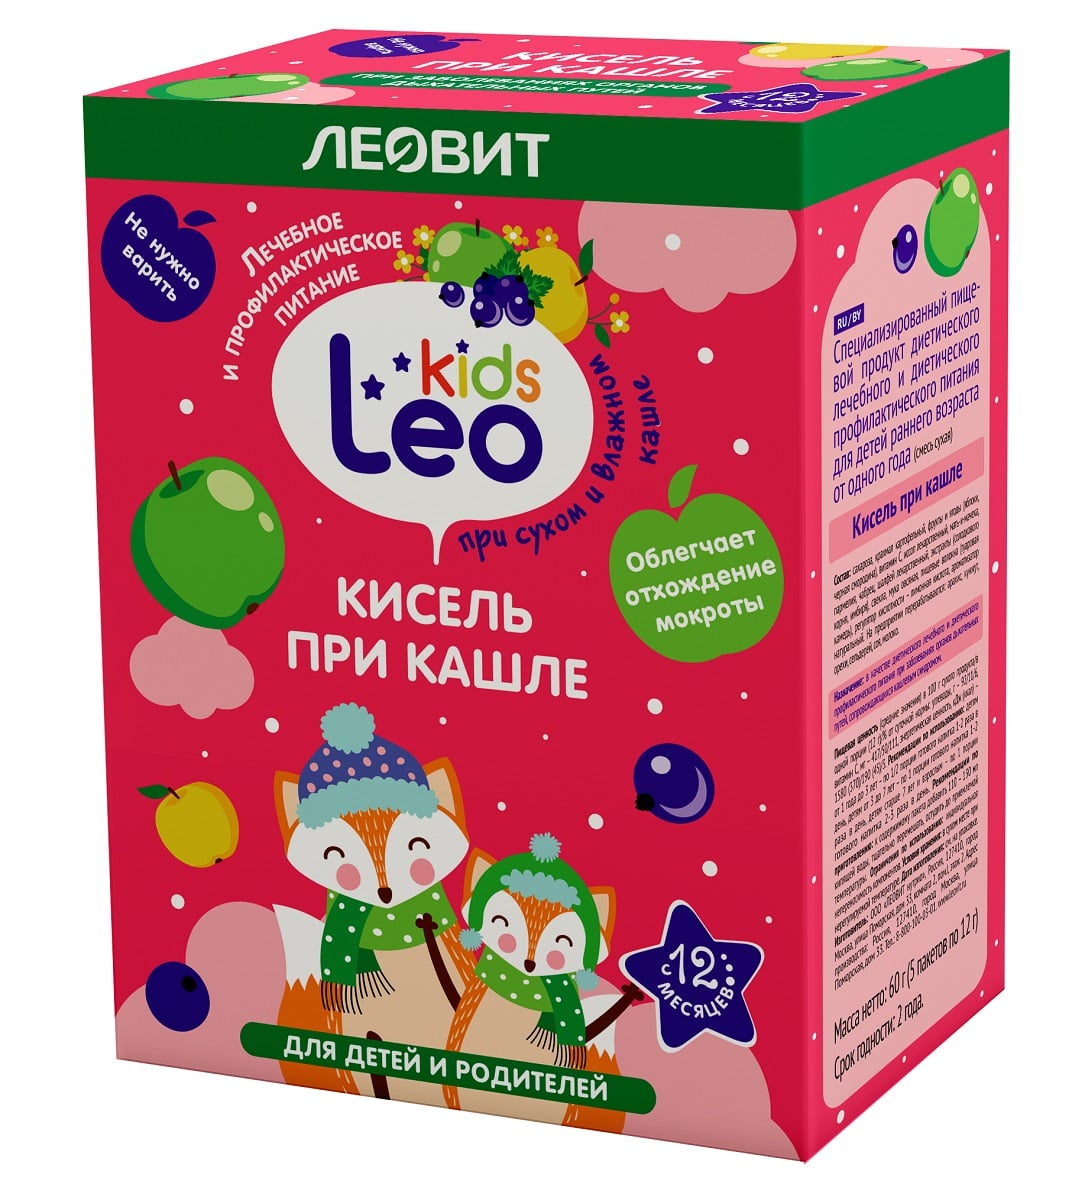 Купить Леовит Кисель при кашле для детей, 5 пакетов х 12 г (Леовит, Leo Kids), Россия